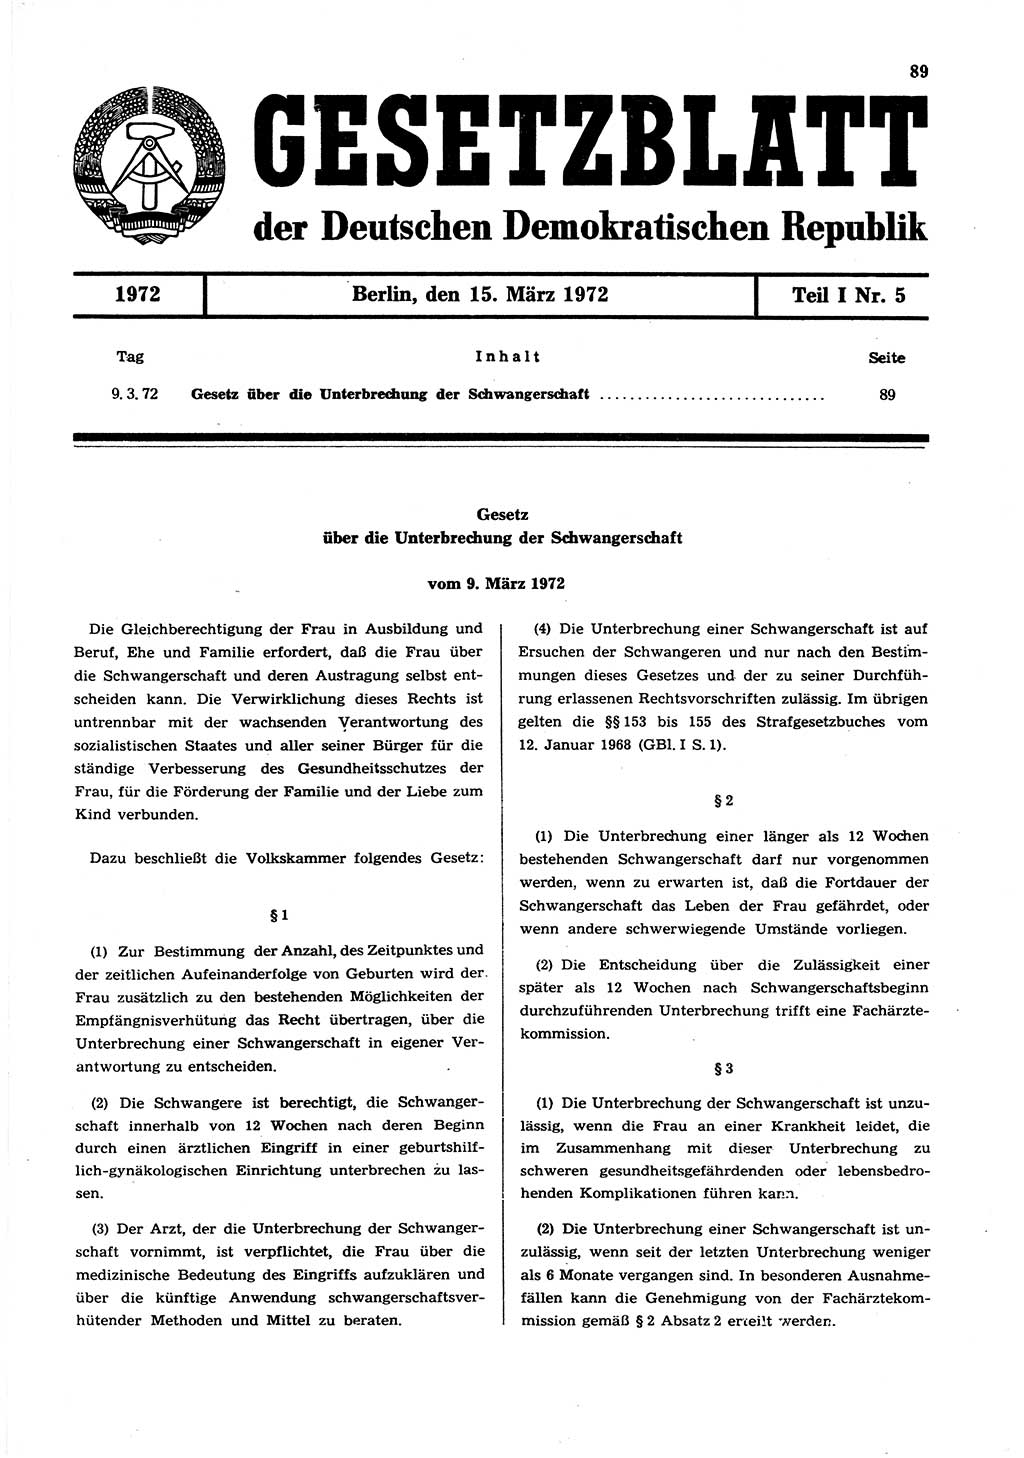 Gesetzblatt (GBl.) der Deutschen Demokratischen Republik (DDR) Teil Ⅰ 1972, Seite 89 (GBl. DDR Ⅰ 1972, S. 89)